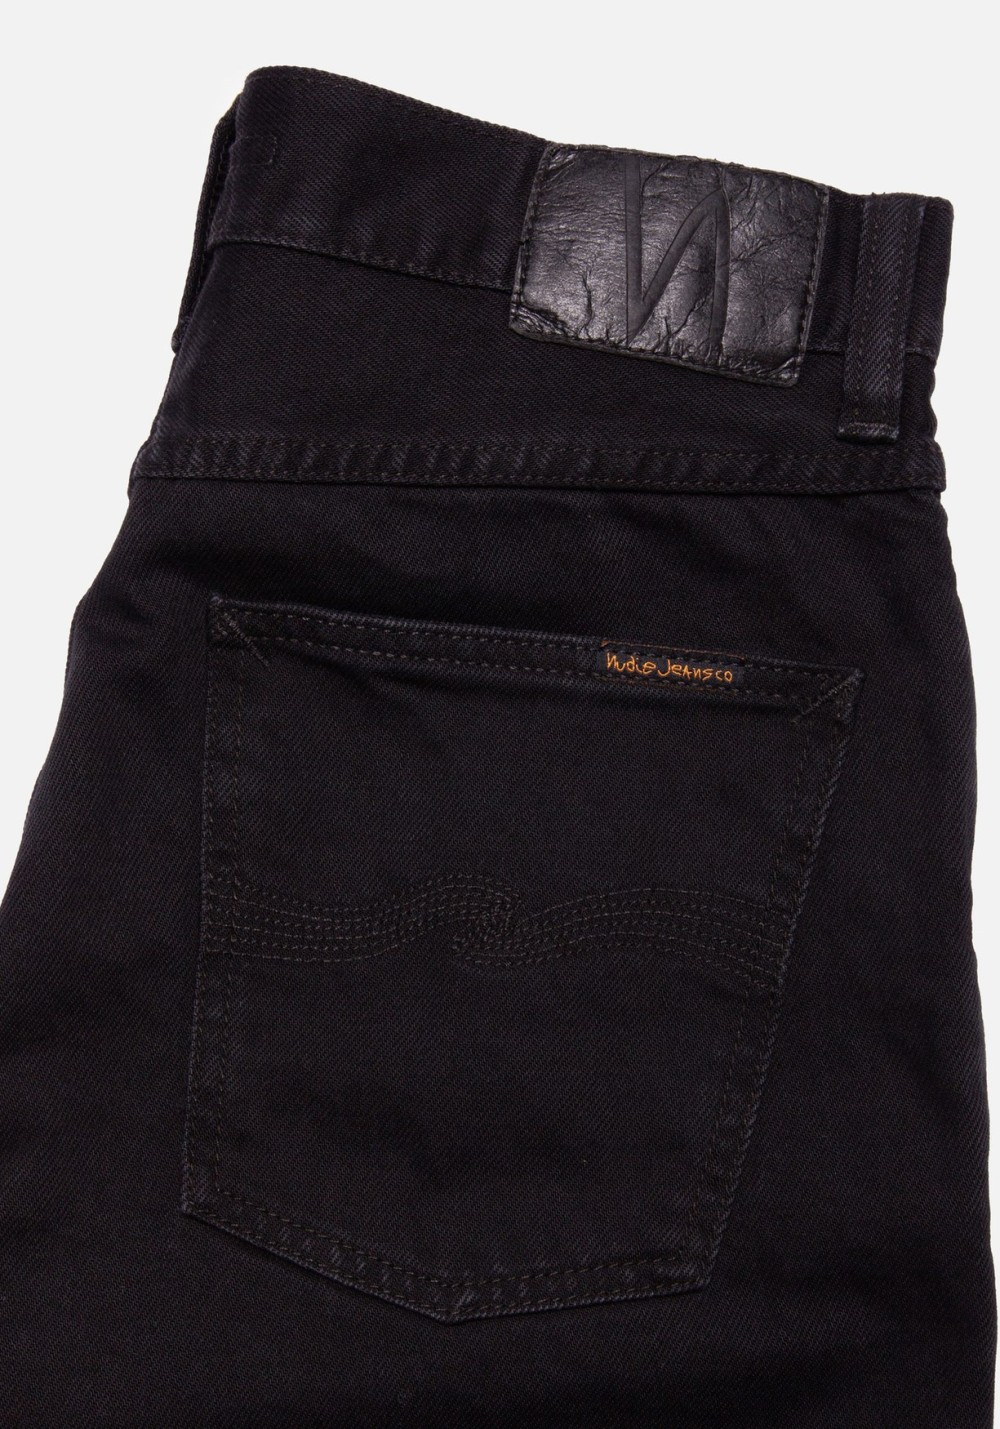 Jeans-Shorts Seth Denim Shorts Aged Black